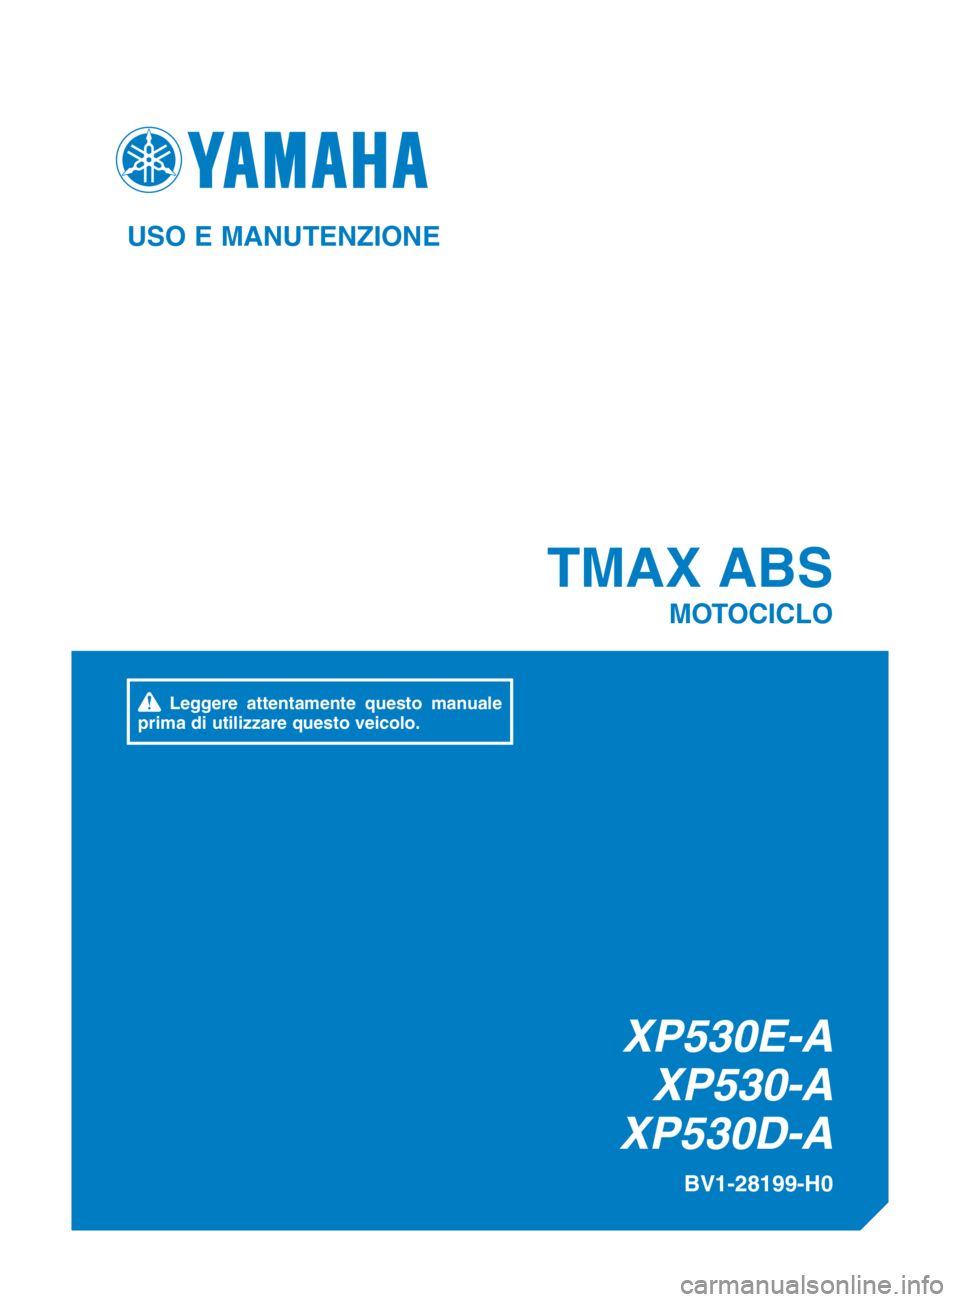 YAMAHA TMAX 2017  Manuale duso (in Italian) XP530E-AXP530-A
XP530D-A
TMAX ABS
MOTOCICLO
BV1-28199-H0
USO E MANUTENZIONE
 Leggere attentamente questo manuale 
prima di utilizzare questo veicolo.
BV1-9-H0_EUR-H_cover_vertical.indd   12016/12/15  